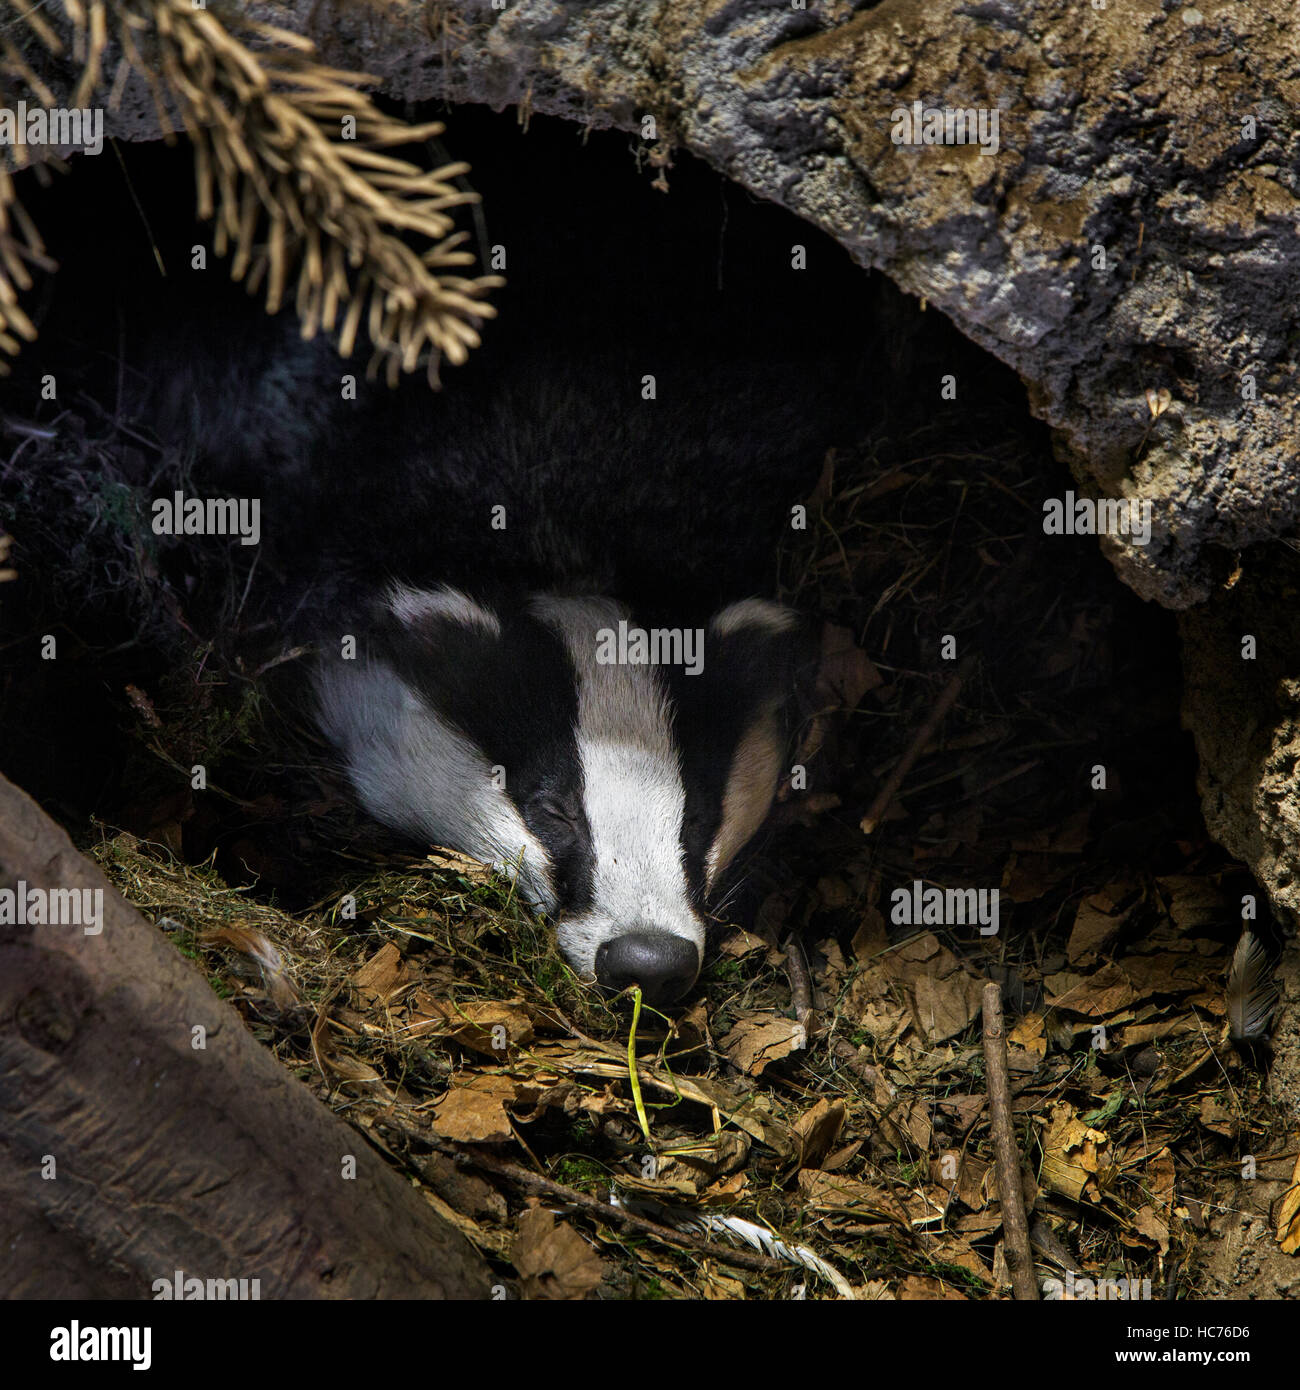 European badger (Meles meles) sleeping in den / sett in coniferous forest Stock Photo